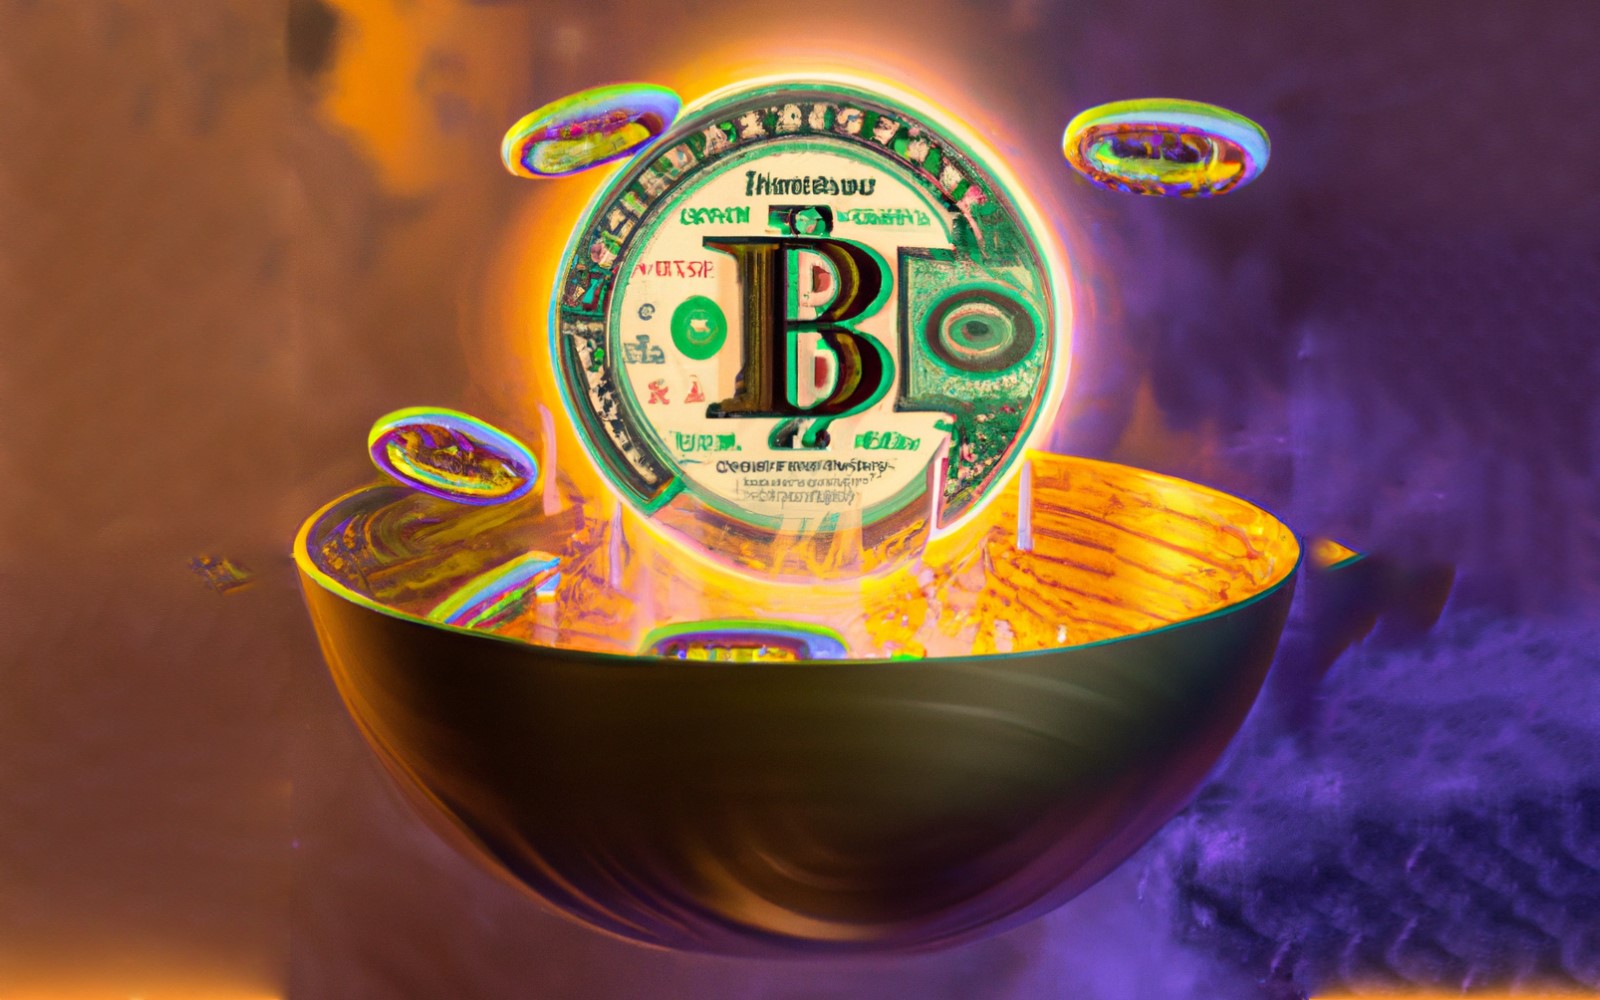 Ekonomika bitcoinových Ordinals roste závratnou rychlostí: Nyní získává stablecoin krytý dolarem na Bitcoinu